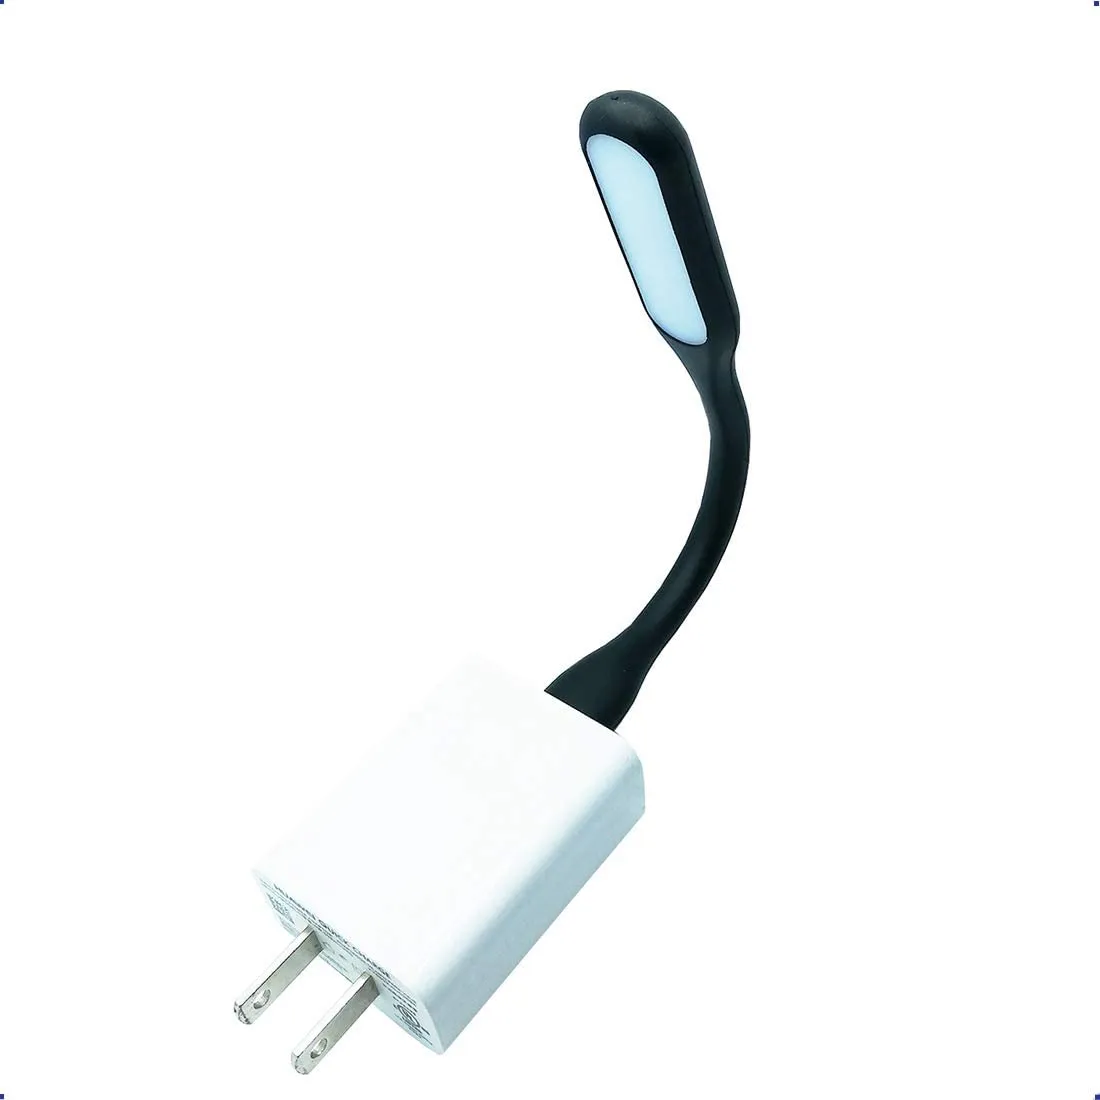 Mini USB Light LED Laptop Light for Power Bank Portable Flexible Night Light or Reading LampColor as Shown 10096267k